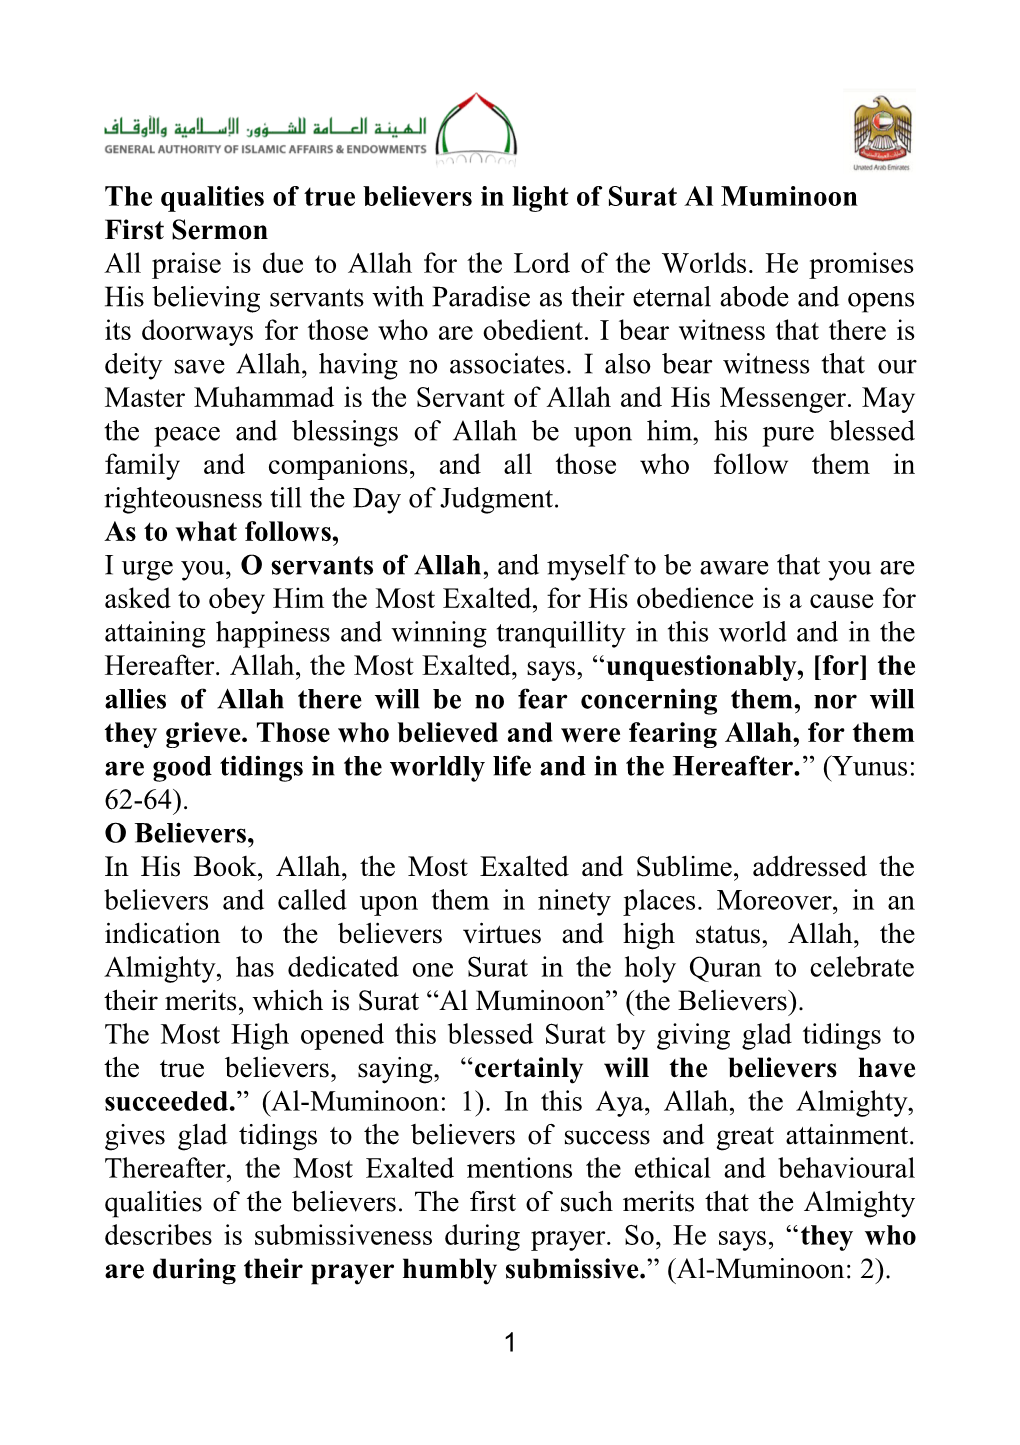 The Qualities of True Believers in Light of Surat Al Muminoon